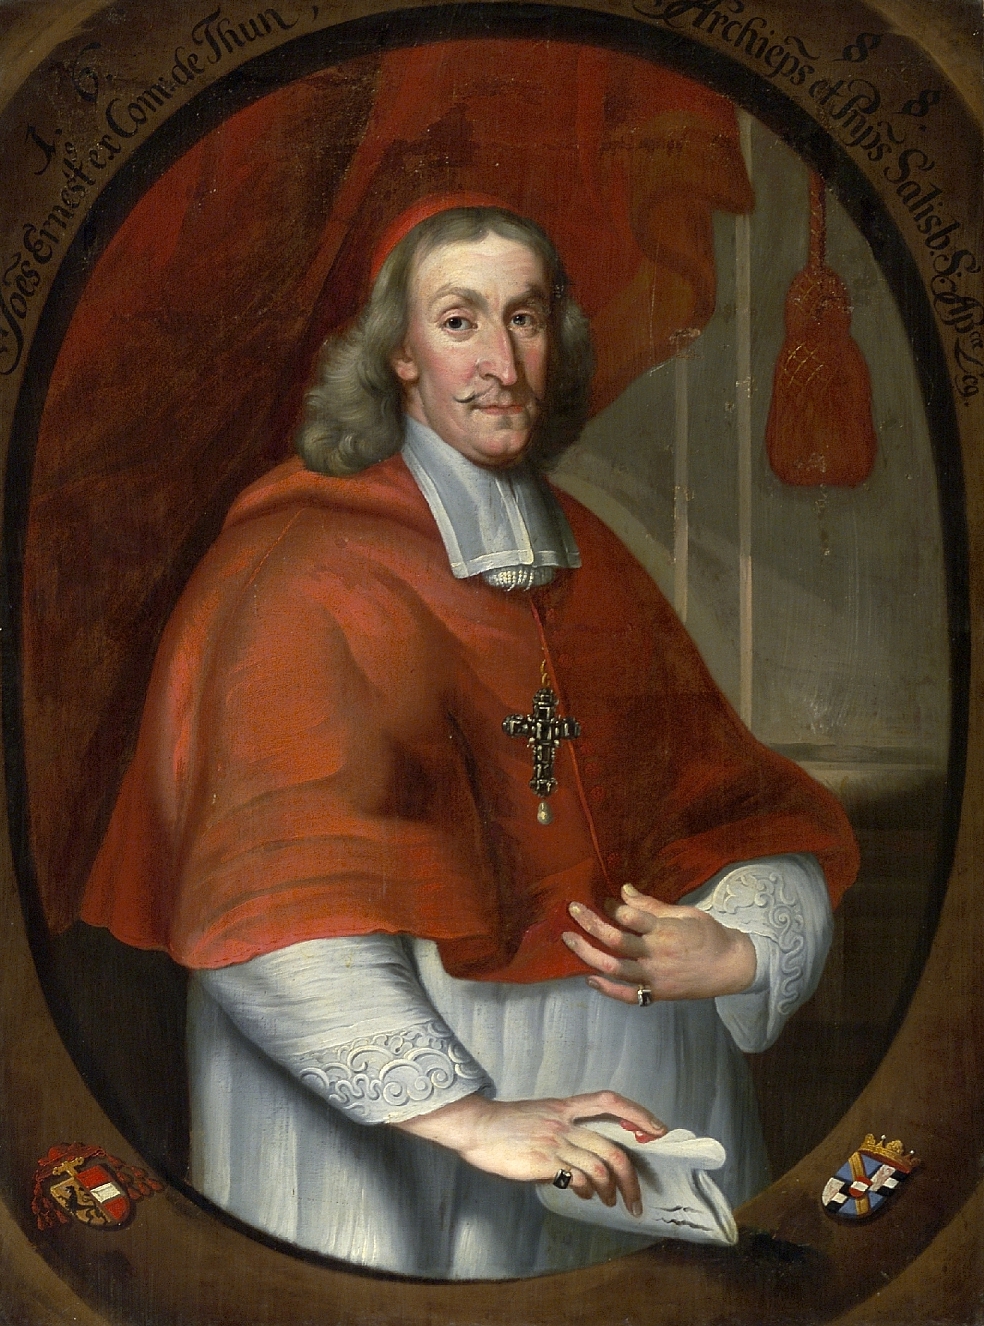 Portrait of the Salzburg archbishop Count Johann Ernst Thun, unknown artist, 1688, oil on canvas, inv. no. 17-25